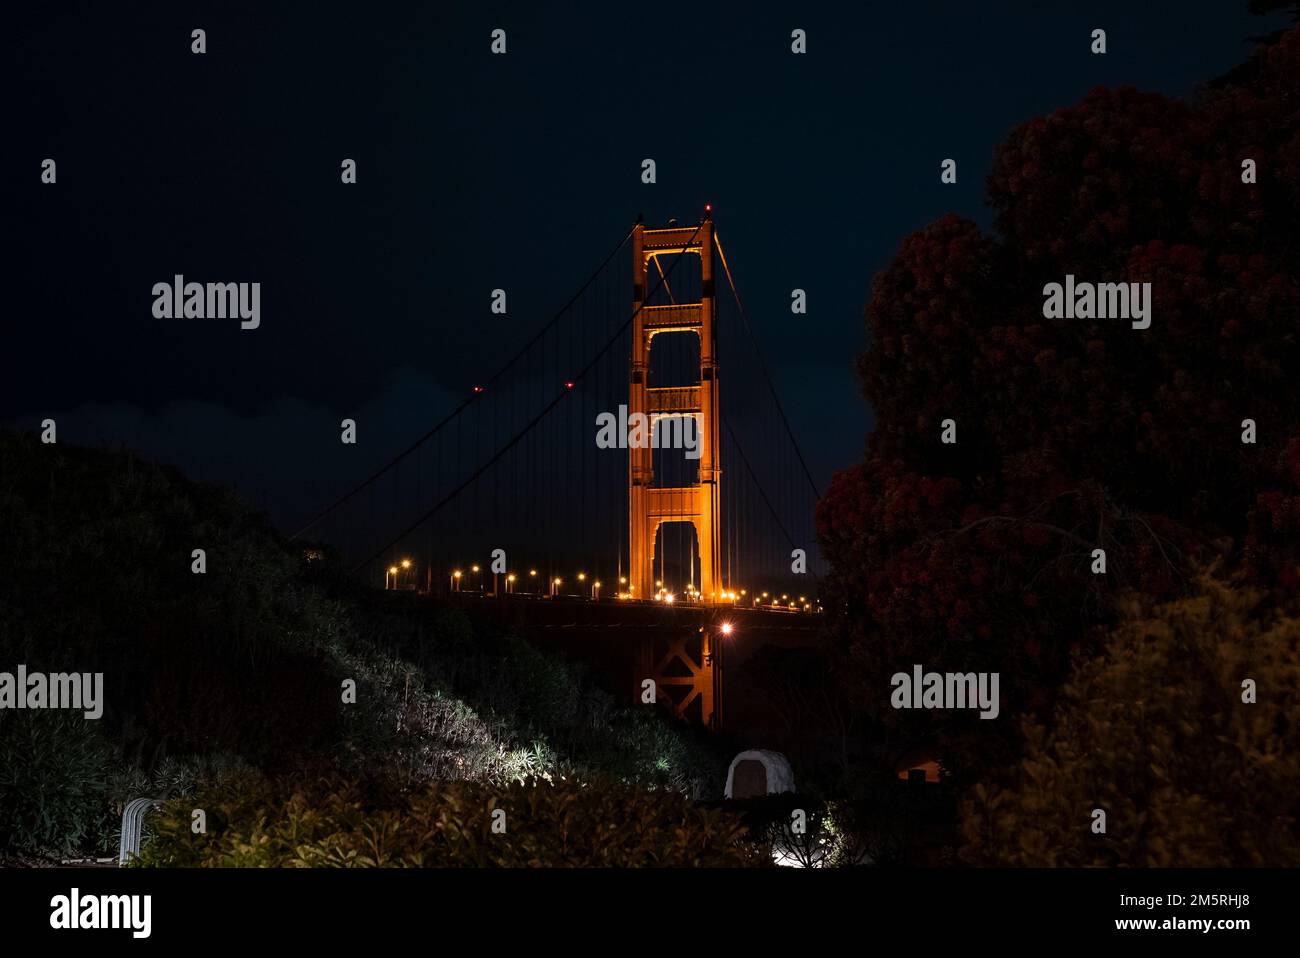 Beleuchtete Golden Gate Bridge in San Francisco, die bei Nacht durch Bäume gesehen wird Stockfoto